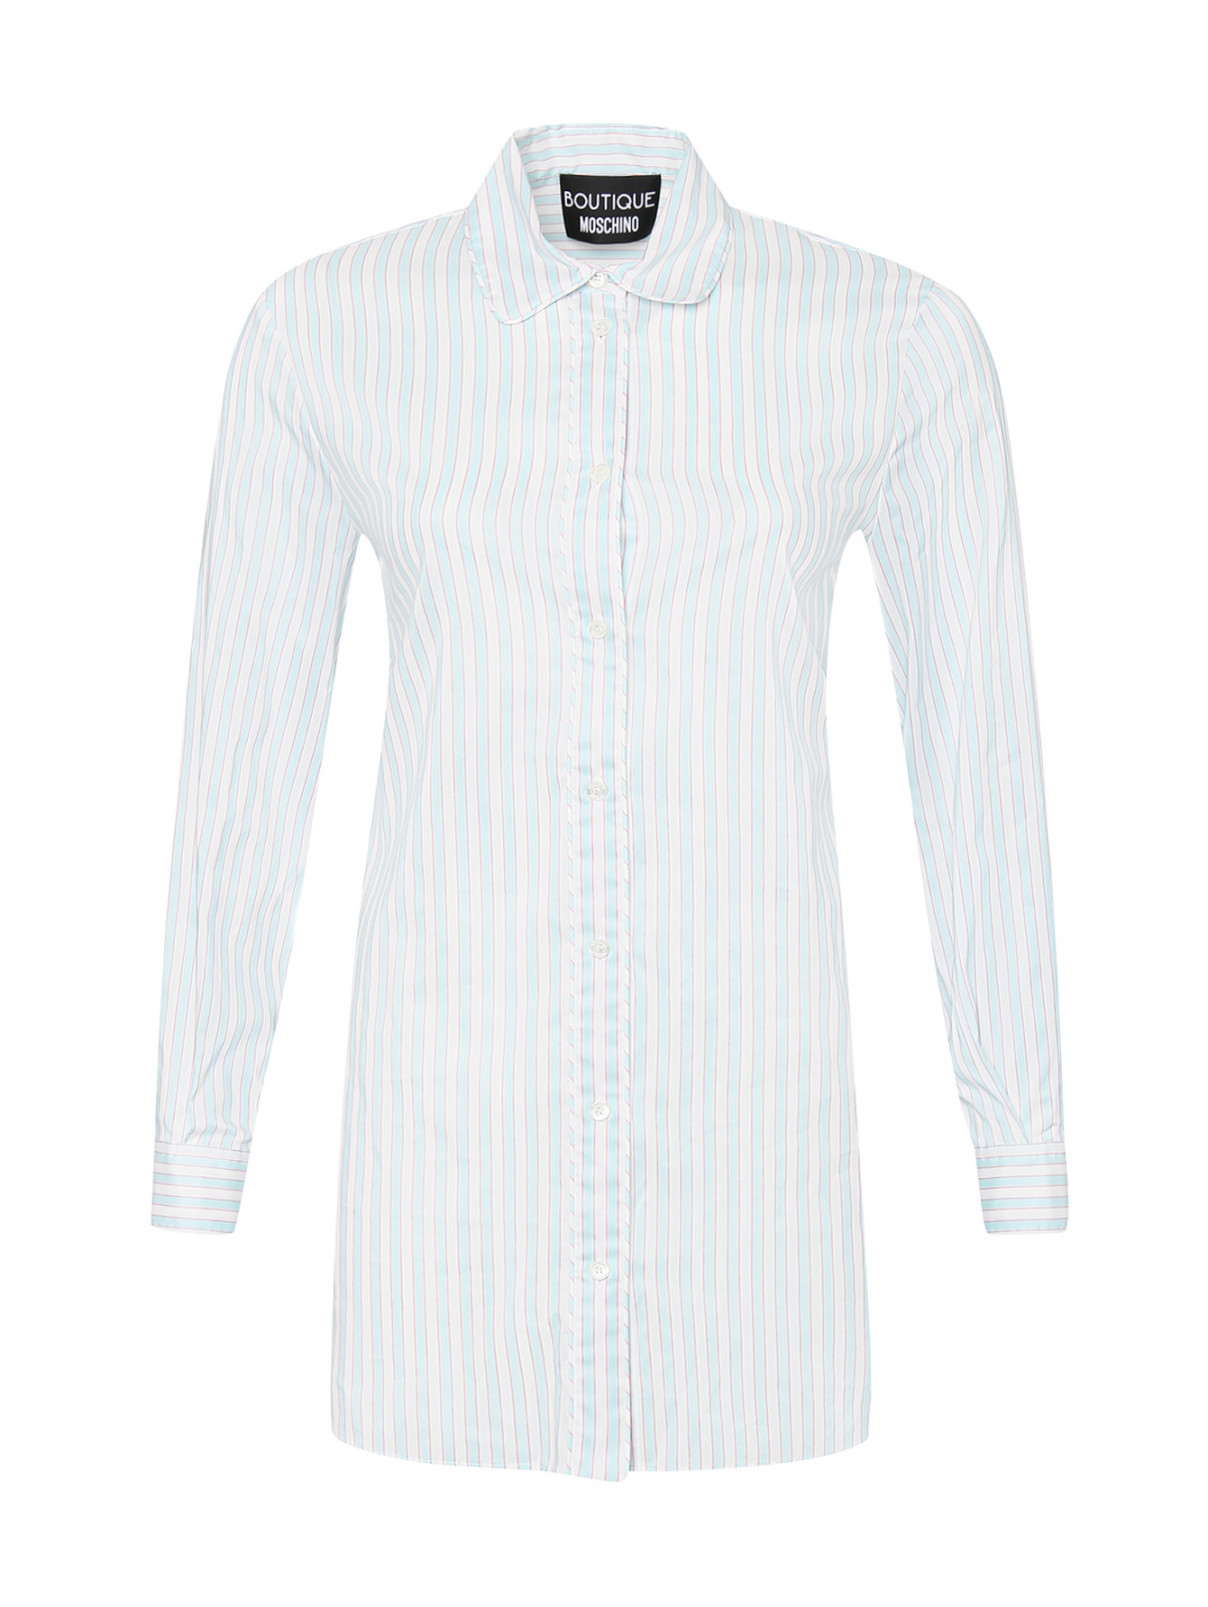 Блуза из хлопка и шелка с узором Moschino Boutique  –  Общий вид  – Цвет:  Узор